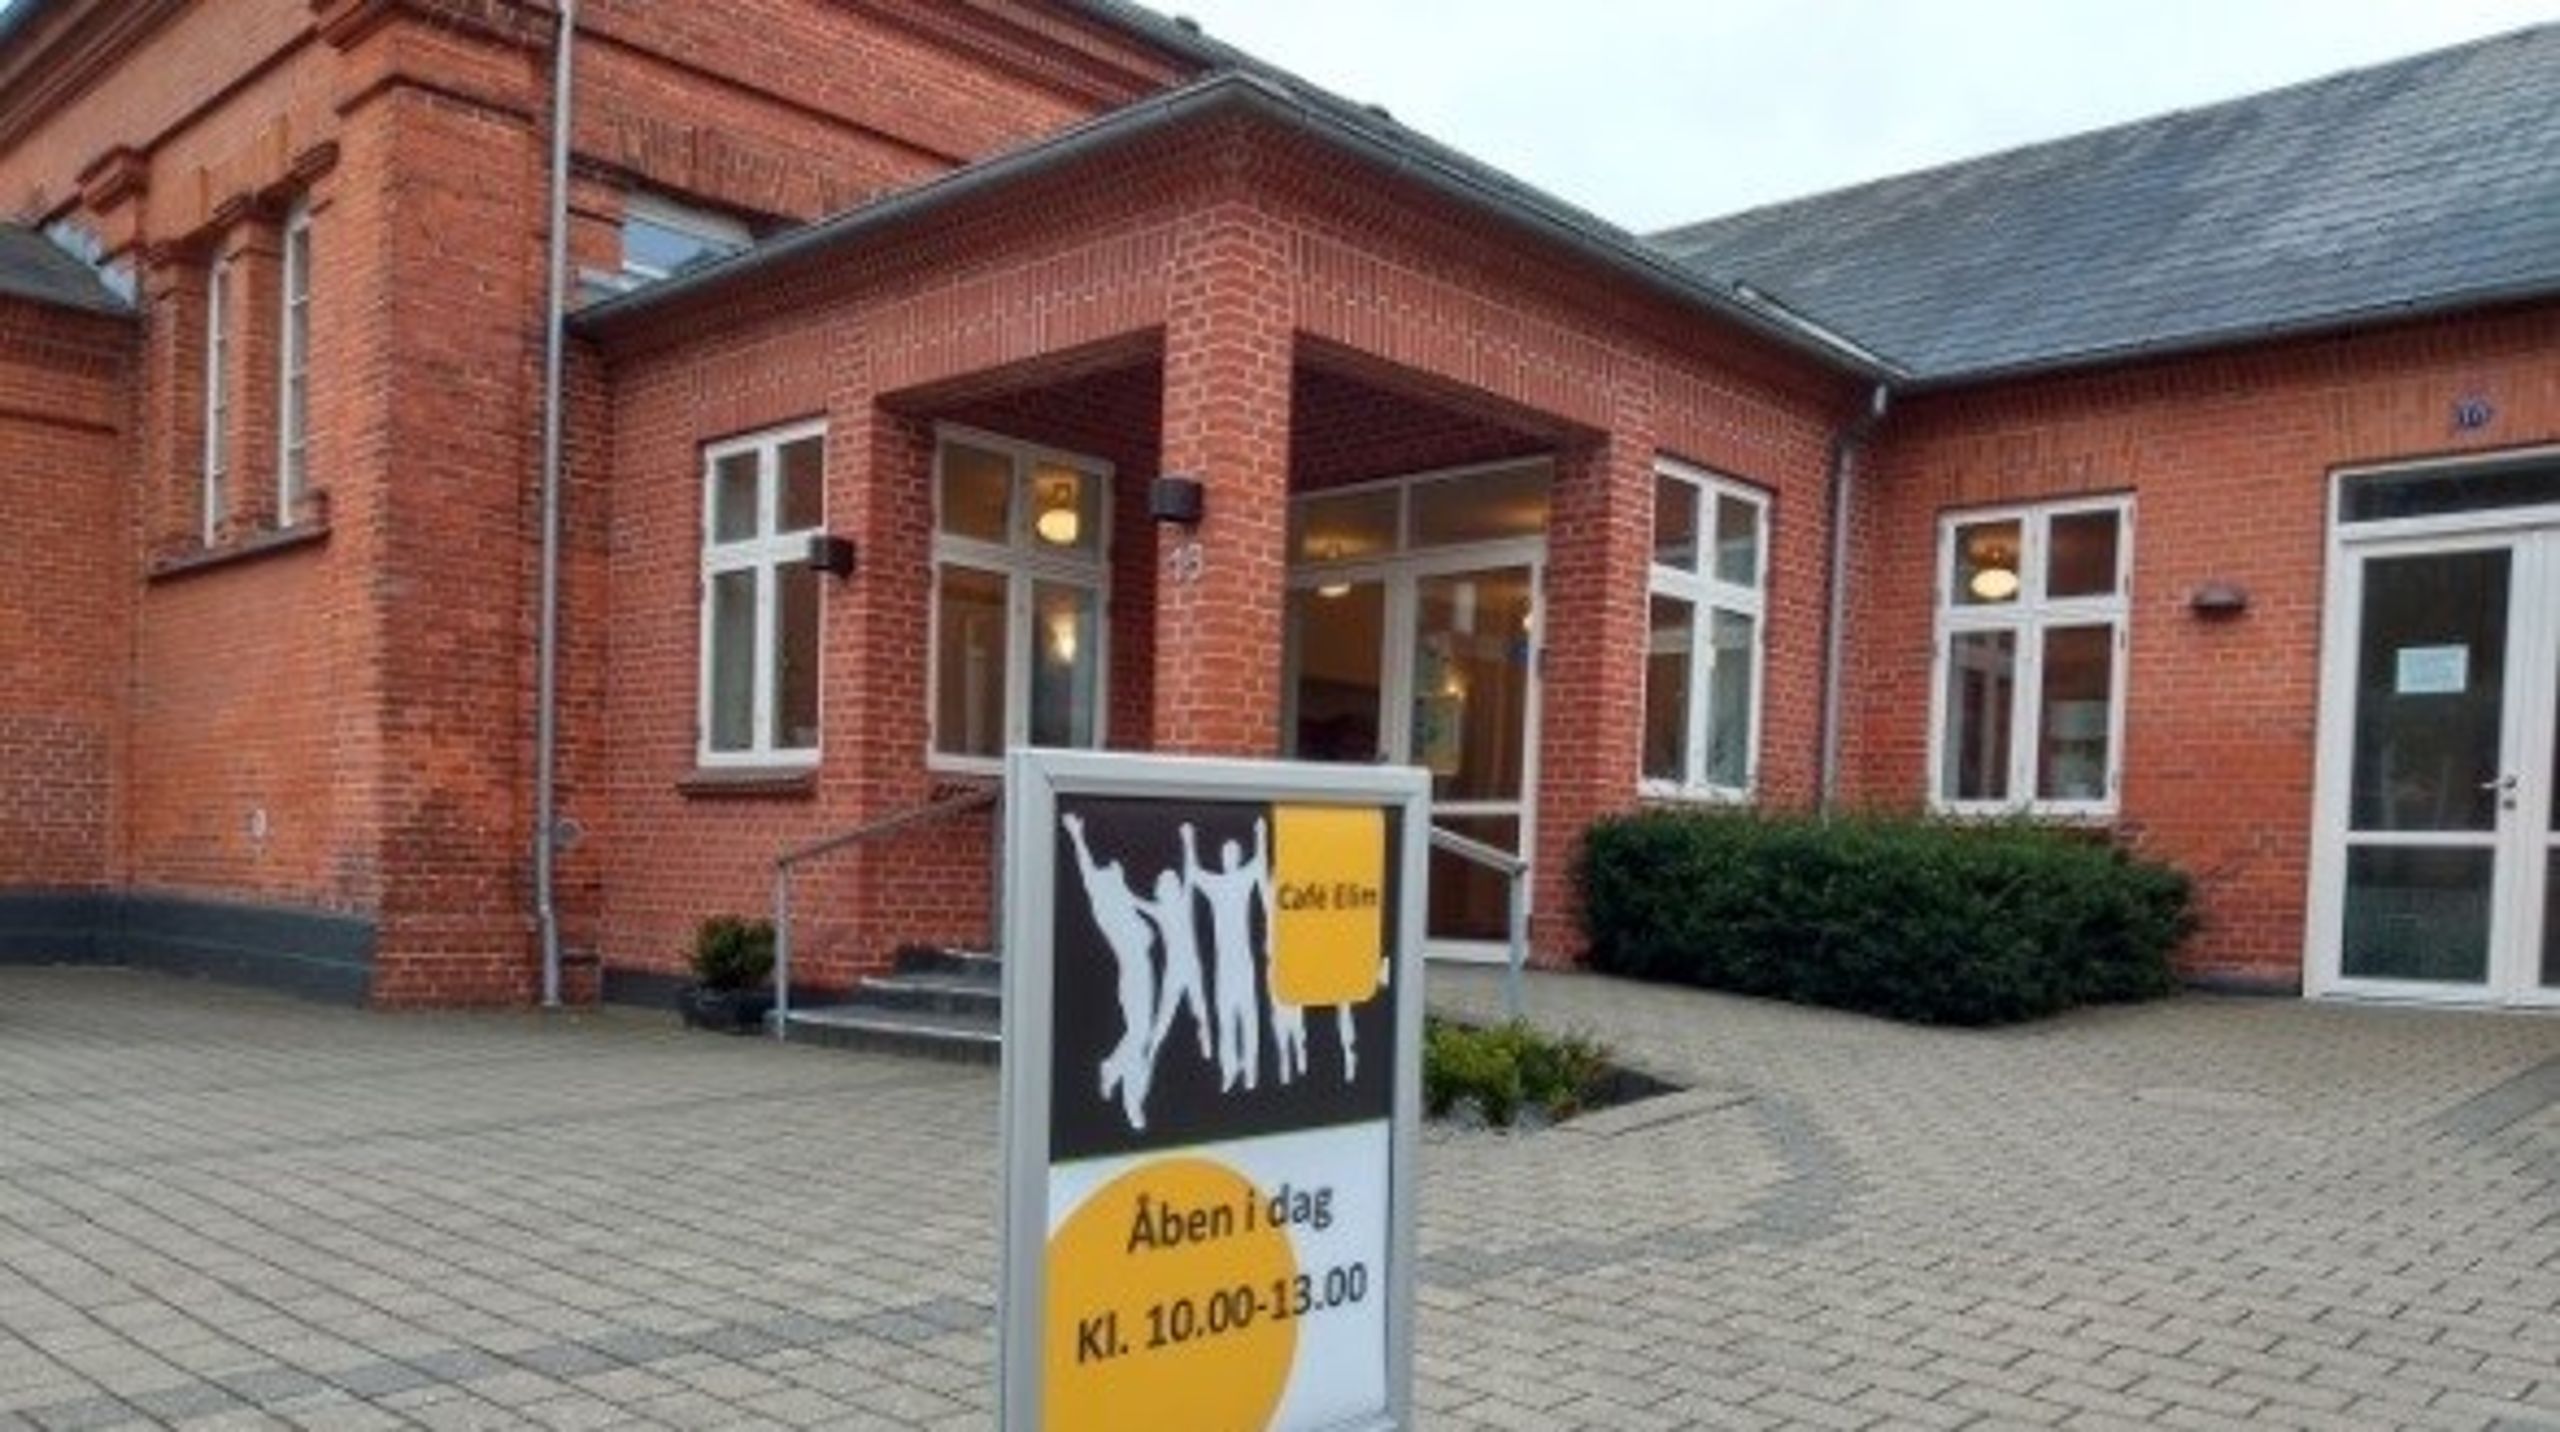 Hos Indre Mission i Holstebro er&nbsp;Café Elim åben for alle&nbsp;hver torsdag formiddag.